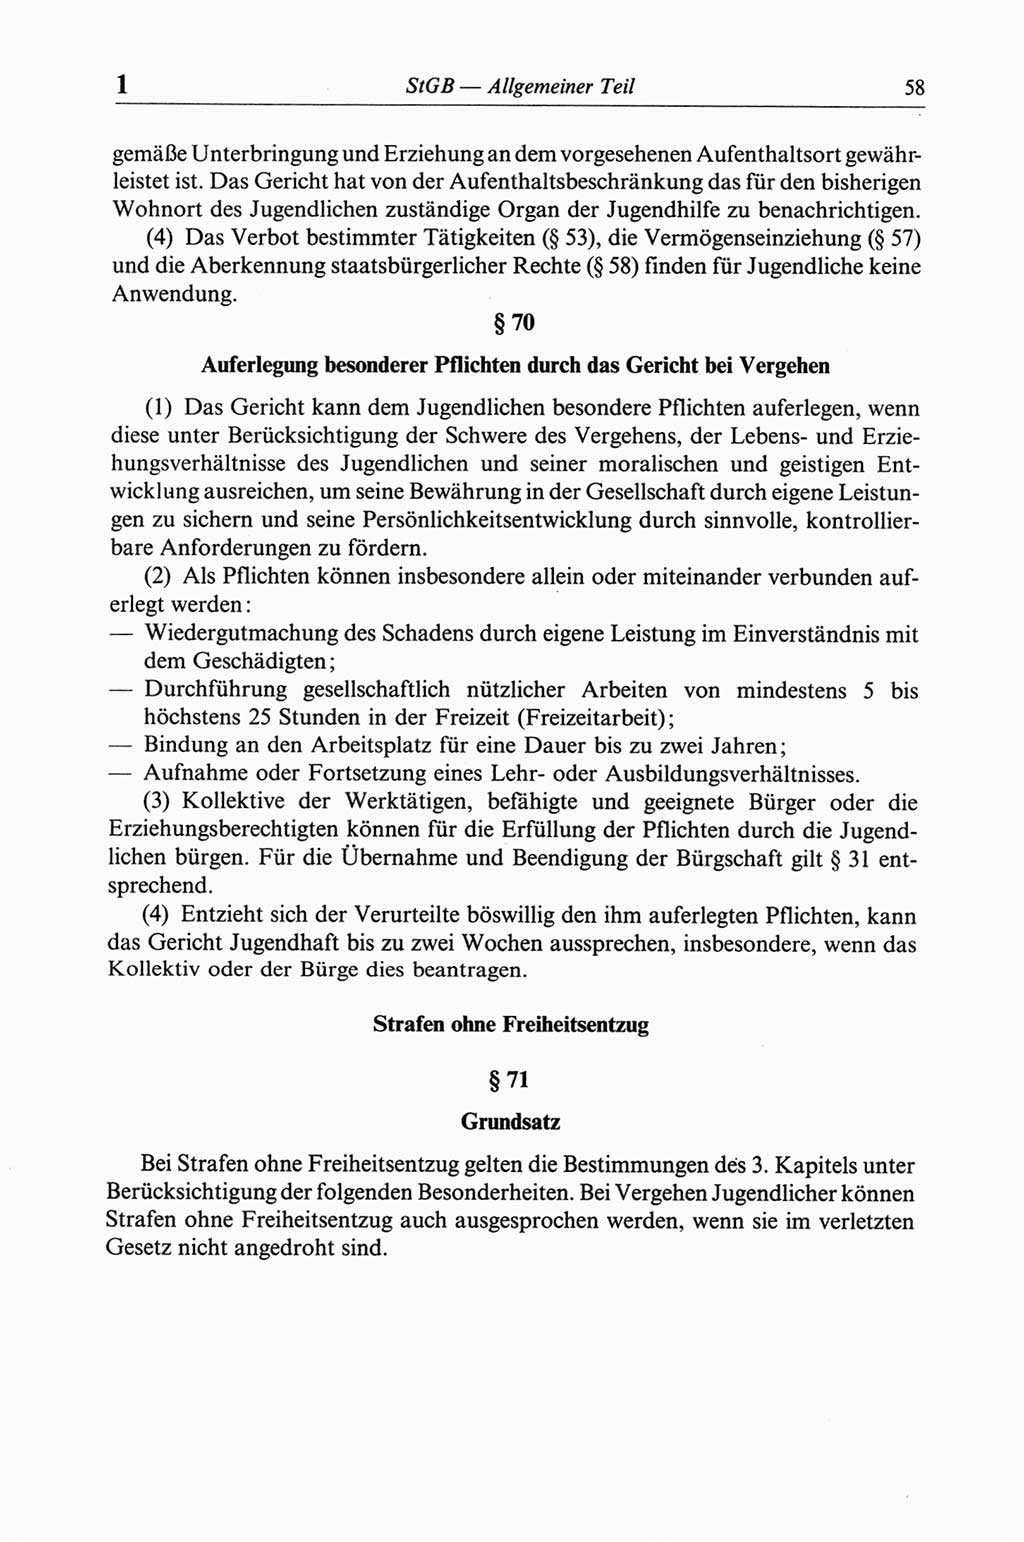 Strafgesetzbuch (StGB) der Deutschen Demokratischen Republik (DDR) und angrenzende Gesetze und Bestimmungen 1968, Seite 58 (StGB Ges. Best. DDR 1968, S. 58)